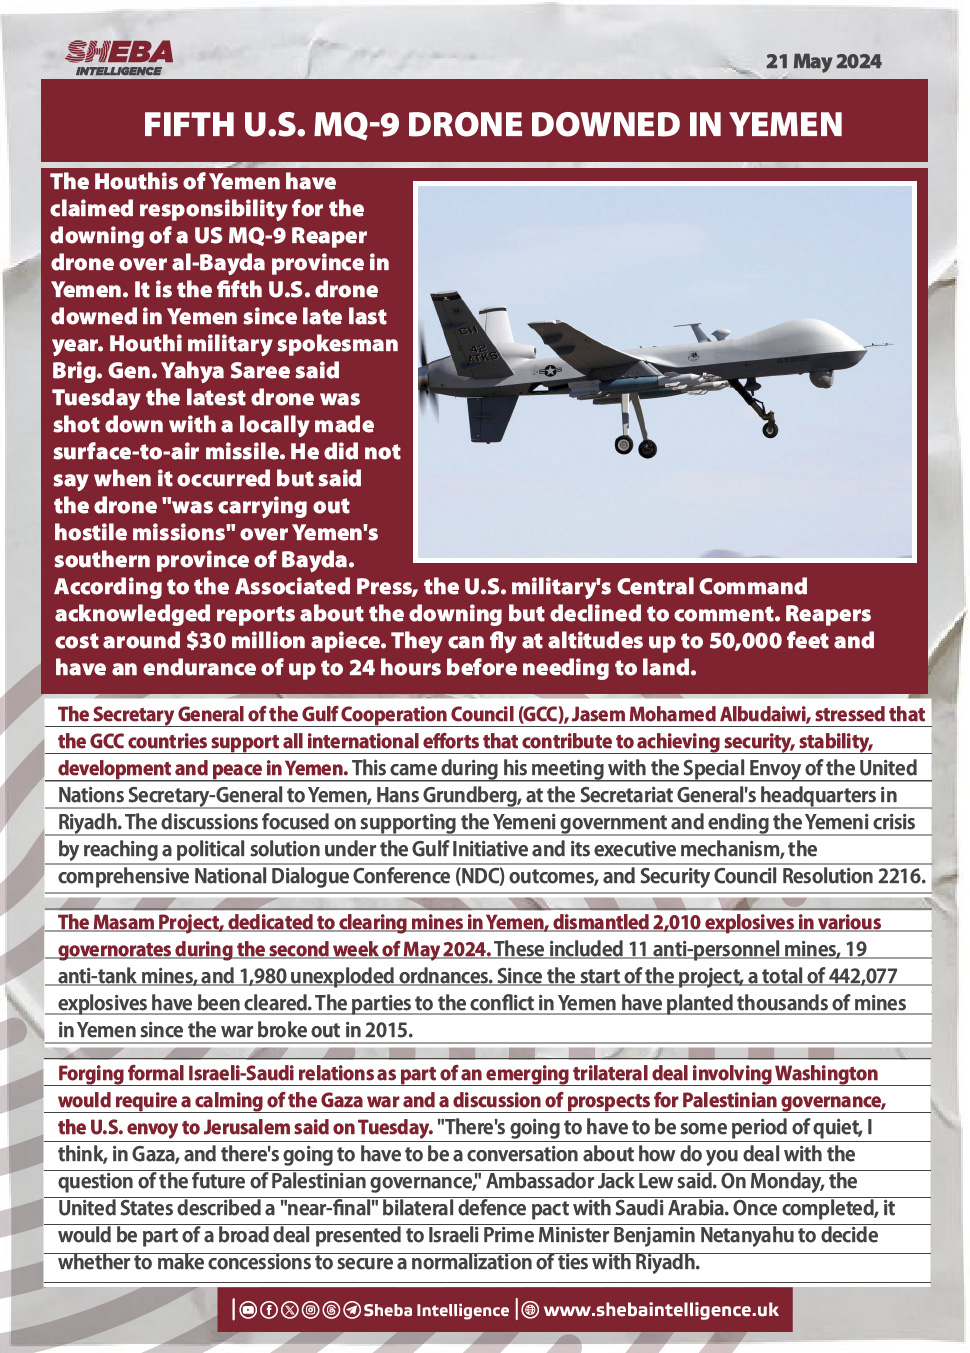 Fifth U.S. MQ-9 Drone Downed in Yemen